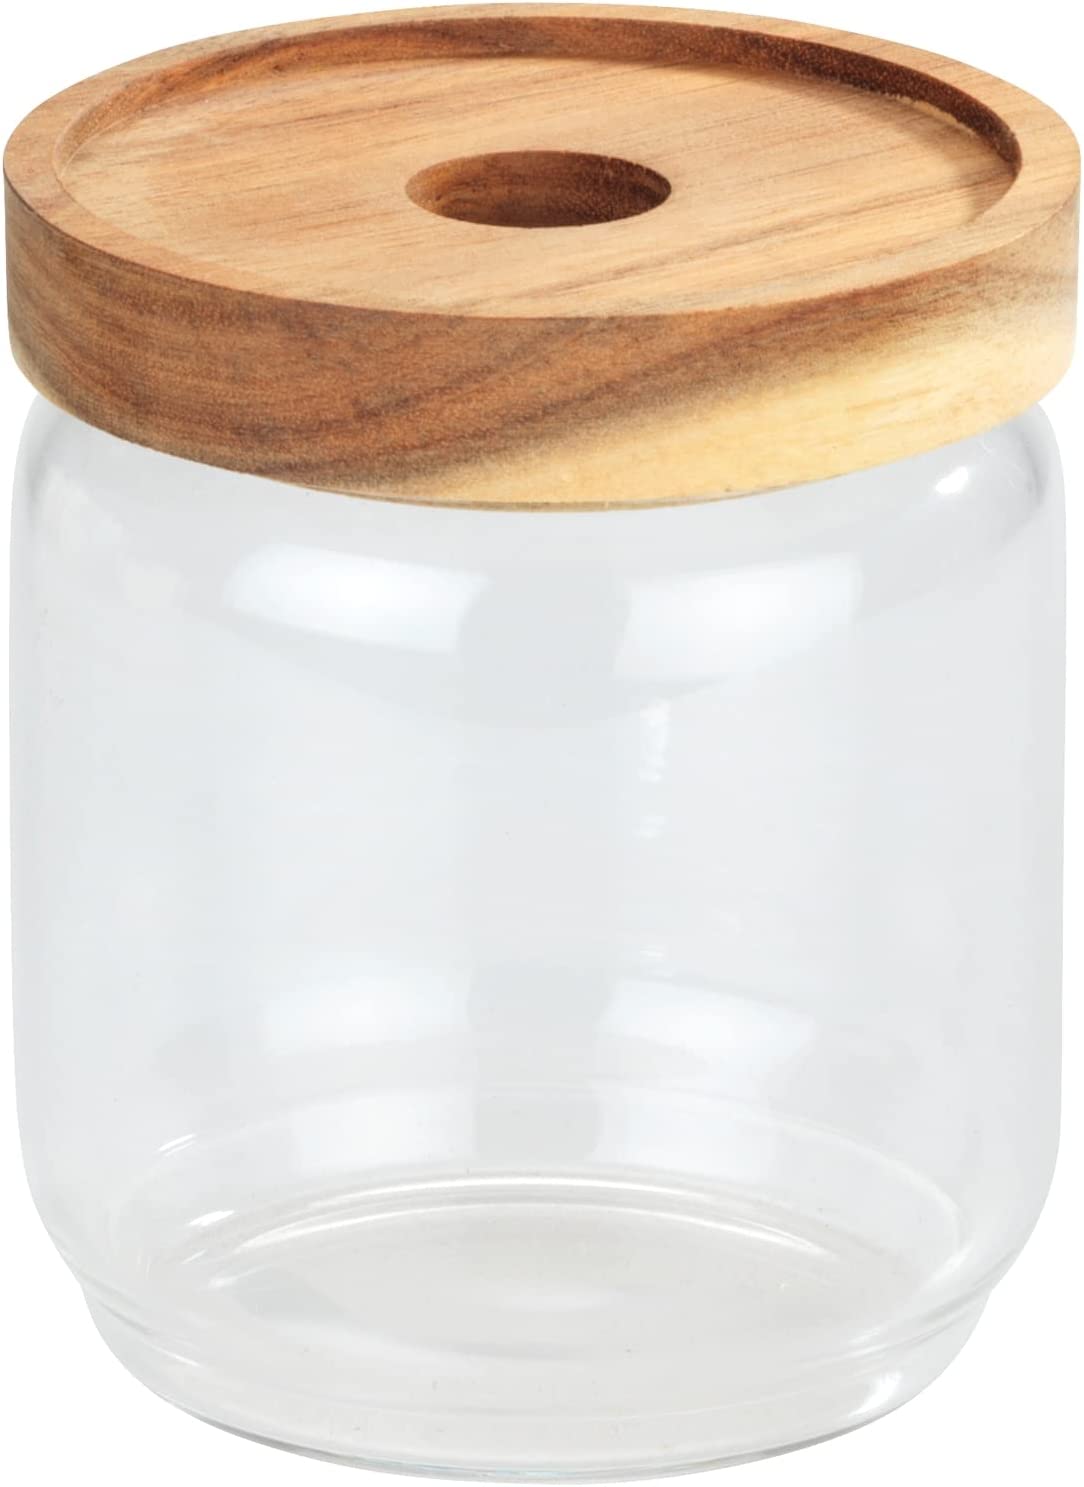 Aufbewahrungsdose Vido, 450 ml, transparente Vorratsdose aus Glas versehen mit einem luftdich verschließbaren Deckel aus Akazienholz, FSC® zertifiziert, platzsparend stapelbar, Ø 9 x 10,5 cm